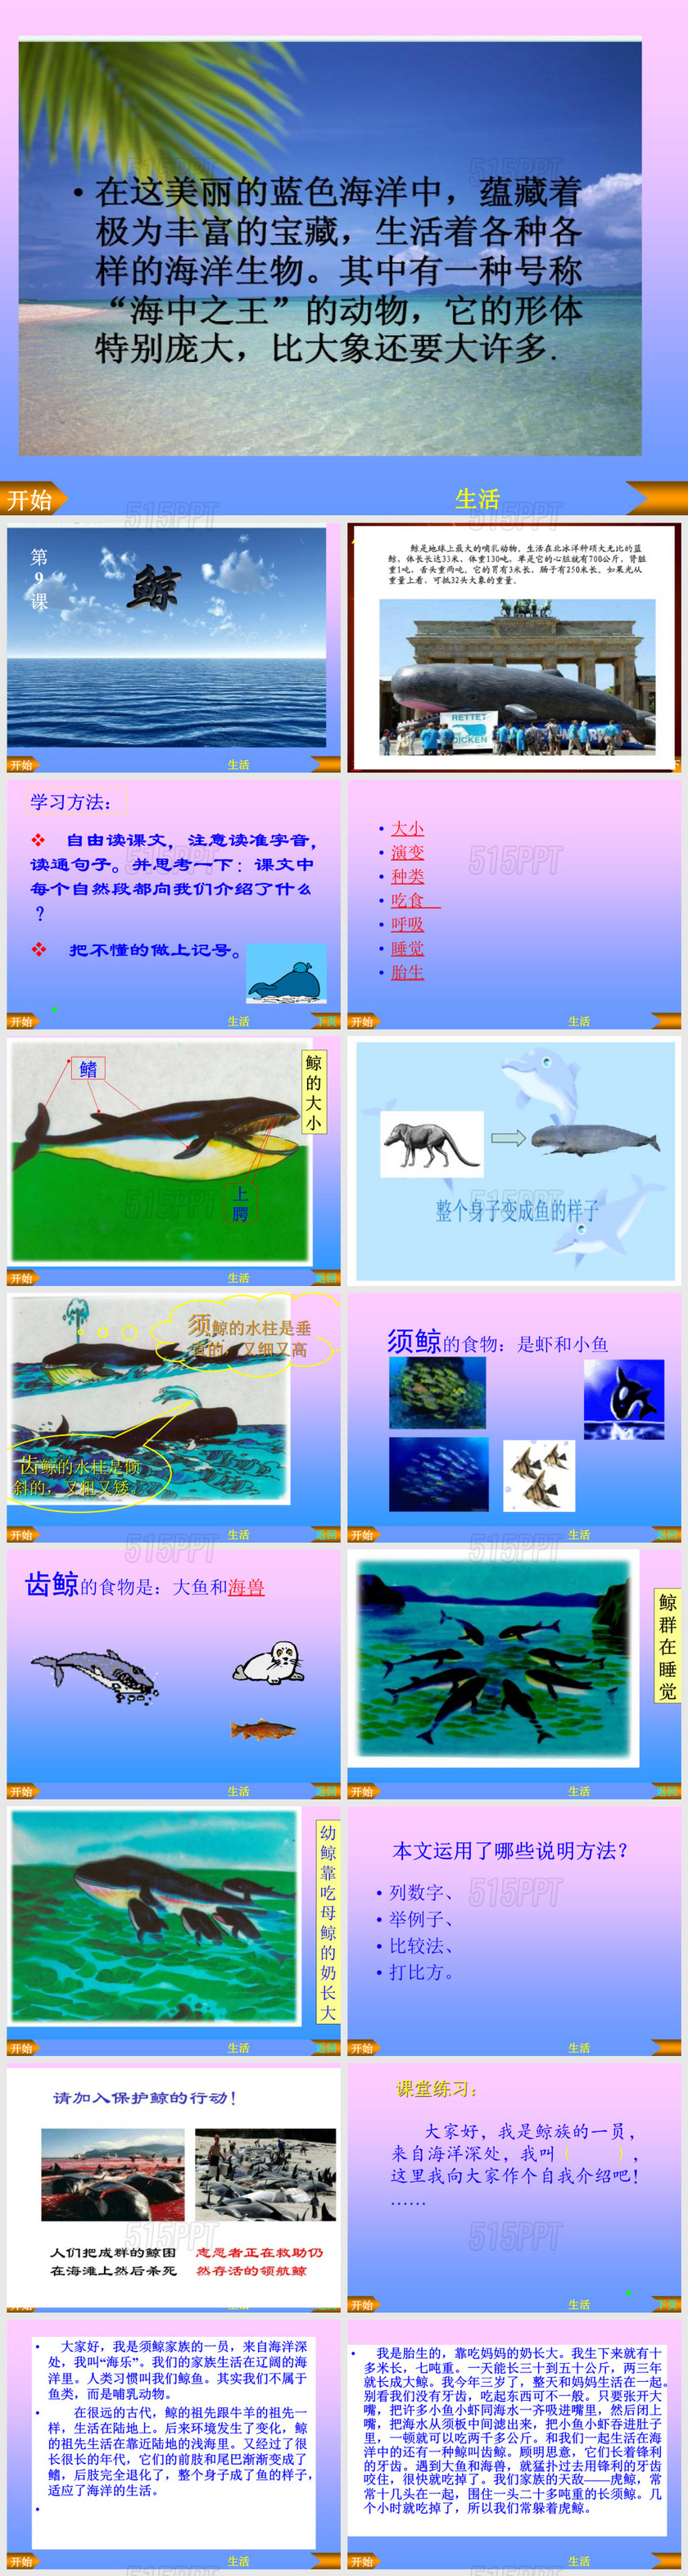 鲸-PPT课件 (1)